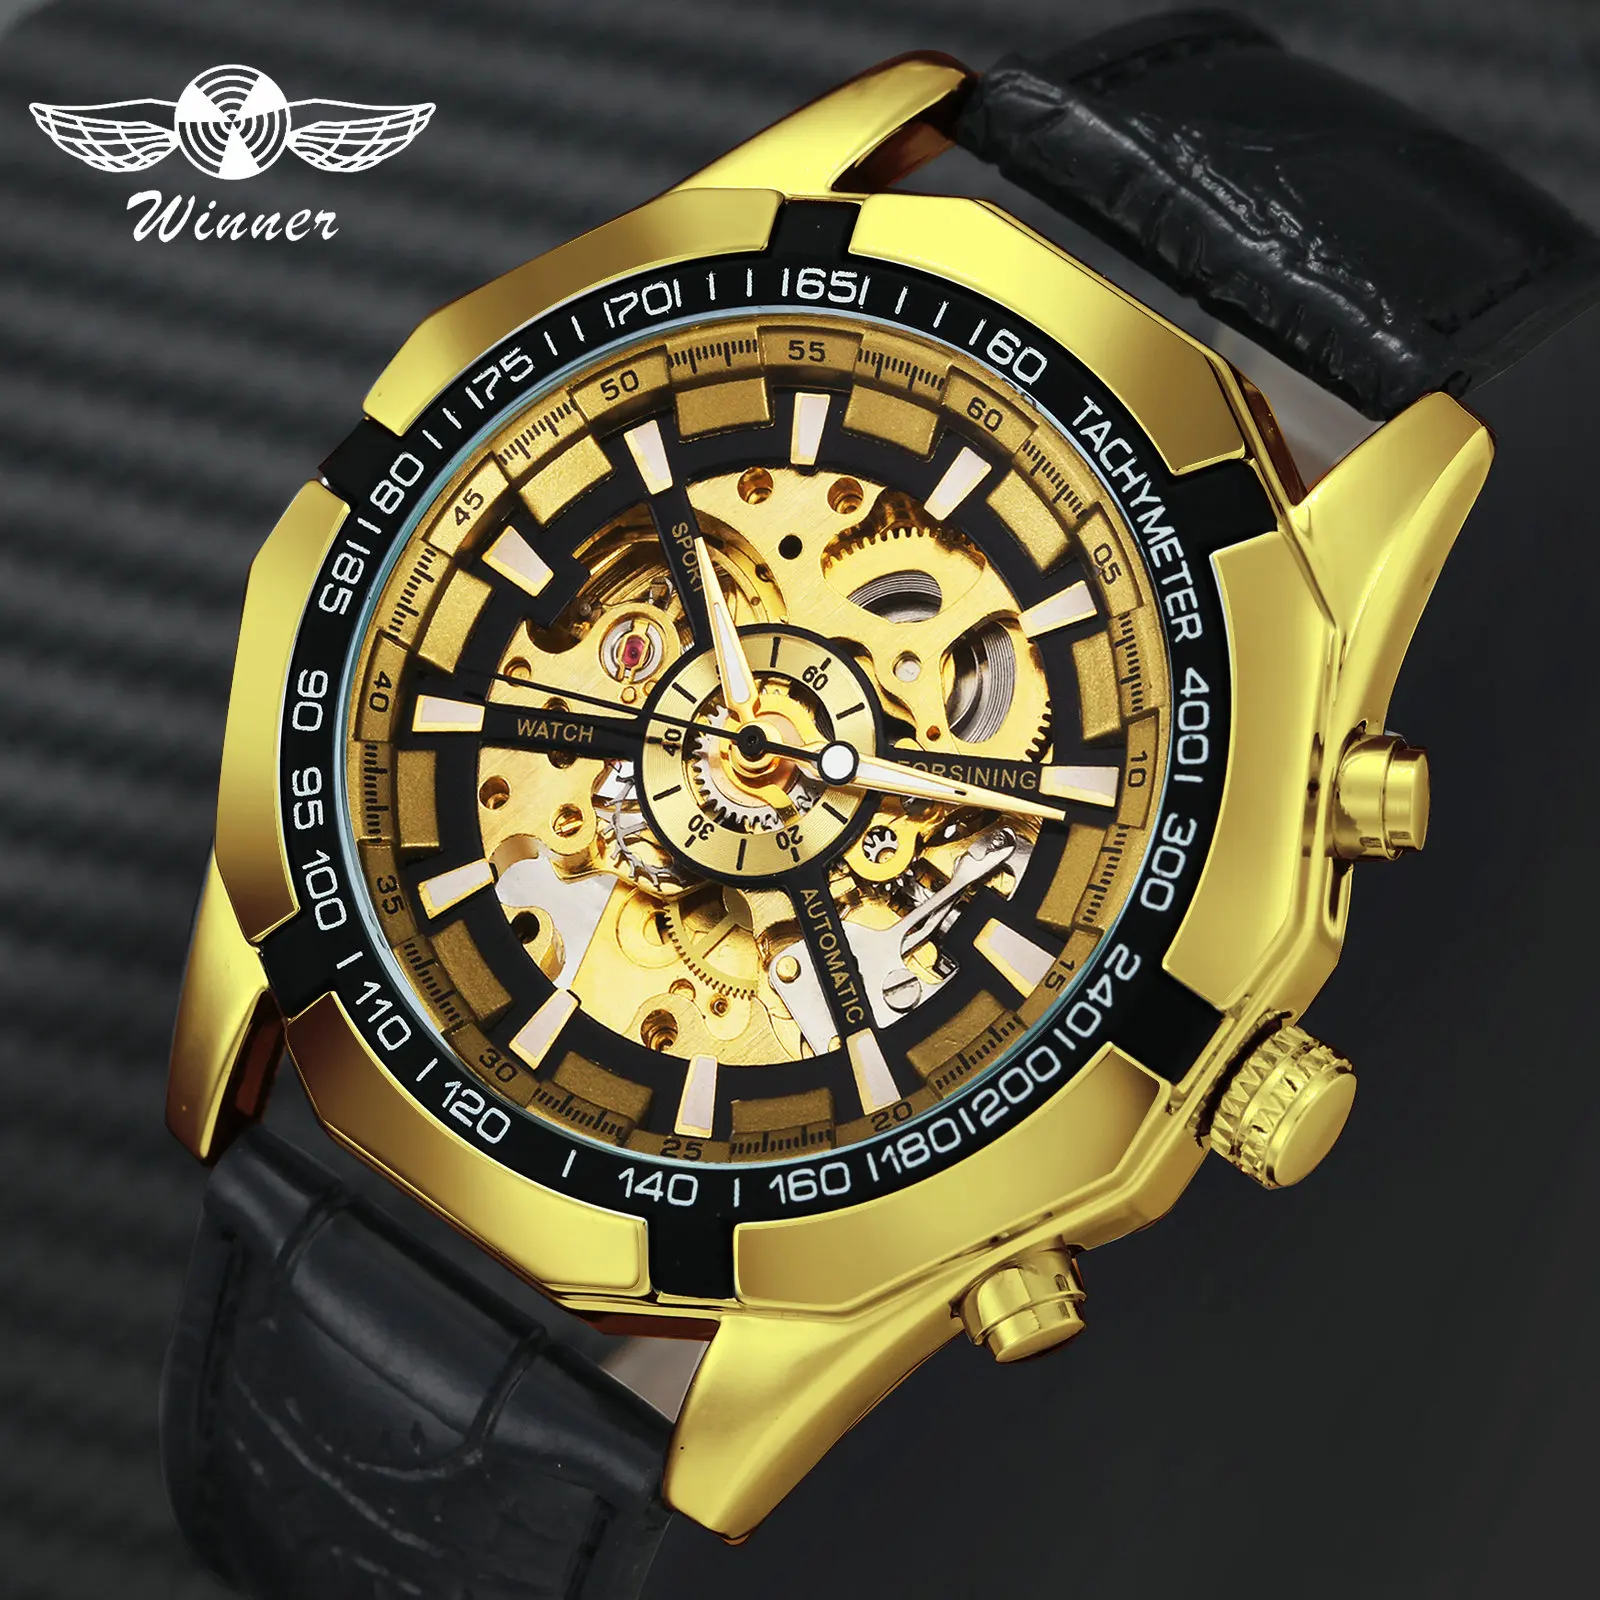 WINNER официальный автоматические часы для мужчин Золотой Скелет Механические мужские s часы бренд класса люкс кожаный ремешок модное платье наручные часы